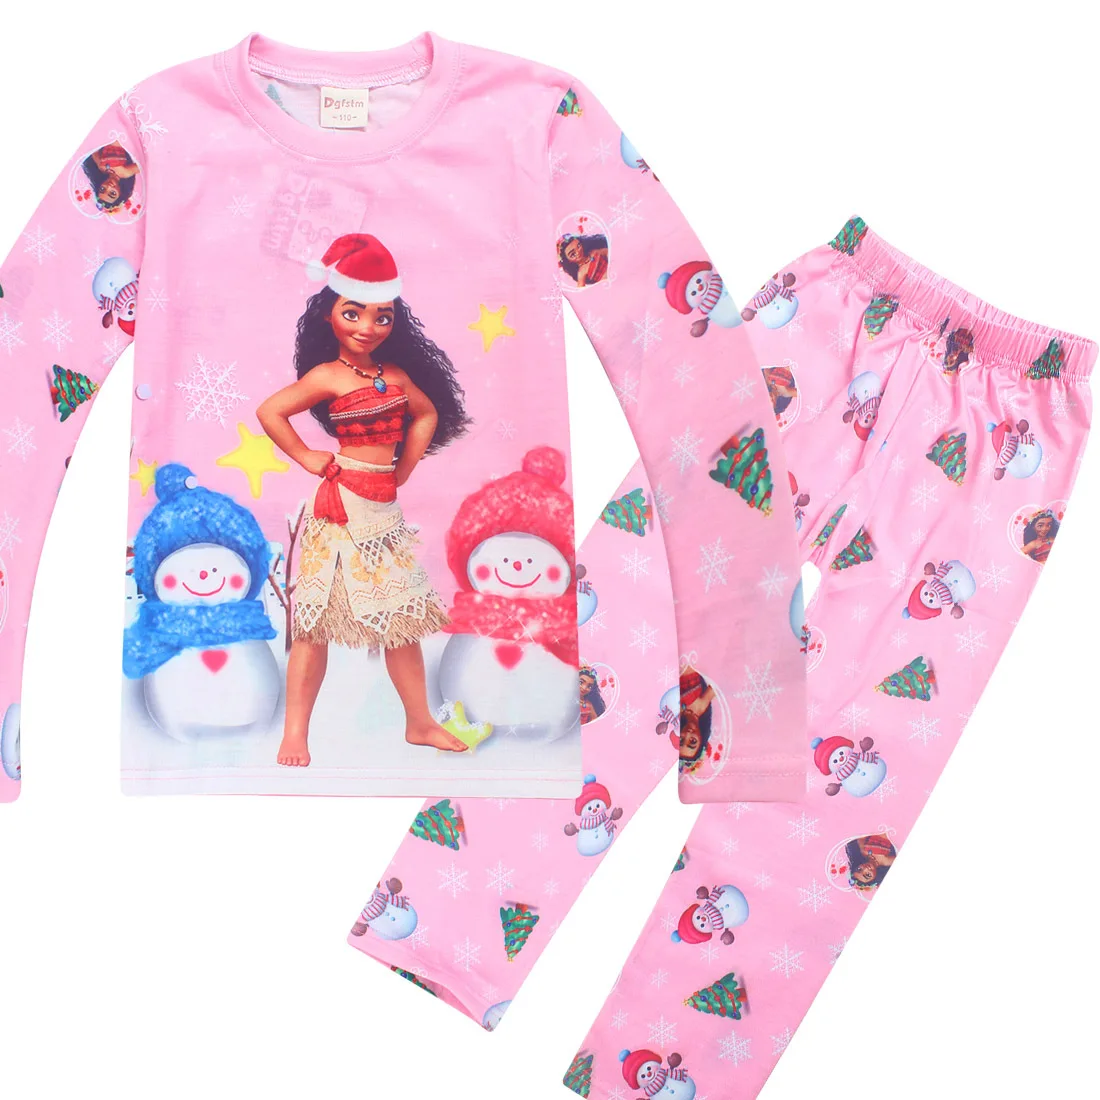 Kids Girls Pajamas Sets Princess Pyjamas Children Christmas Pijama Moana Vaiana Sleepwear Home Clothing Cartoon Clothing _ - AliExpress Mobile